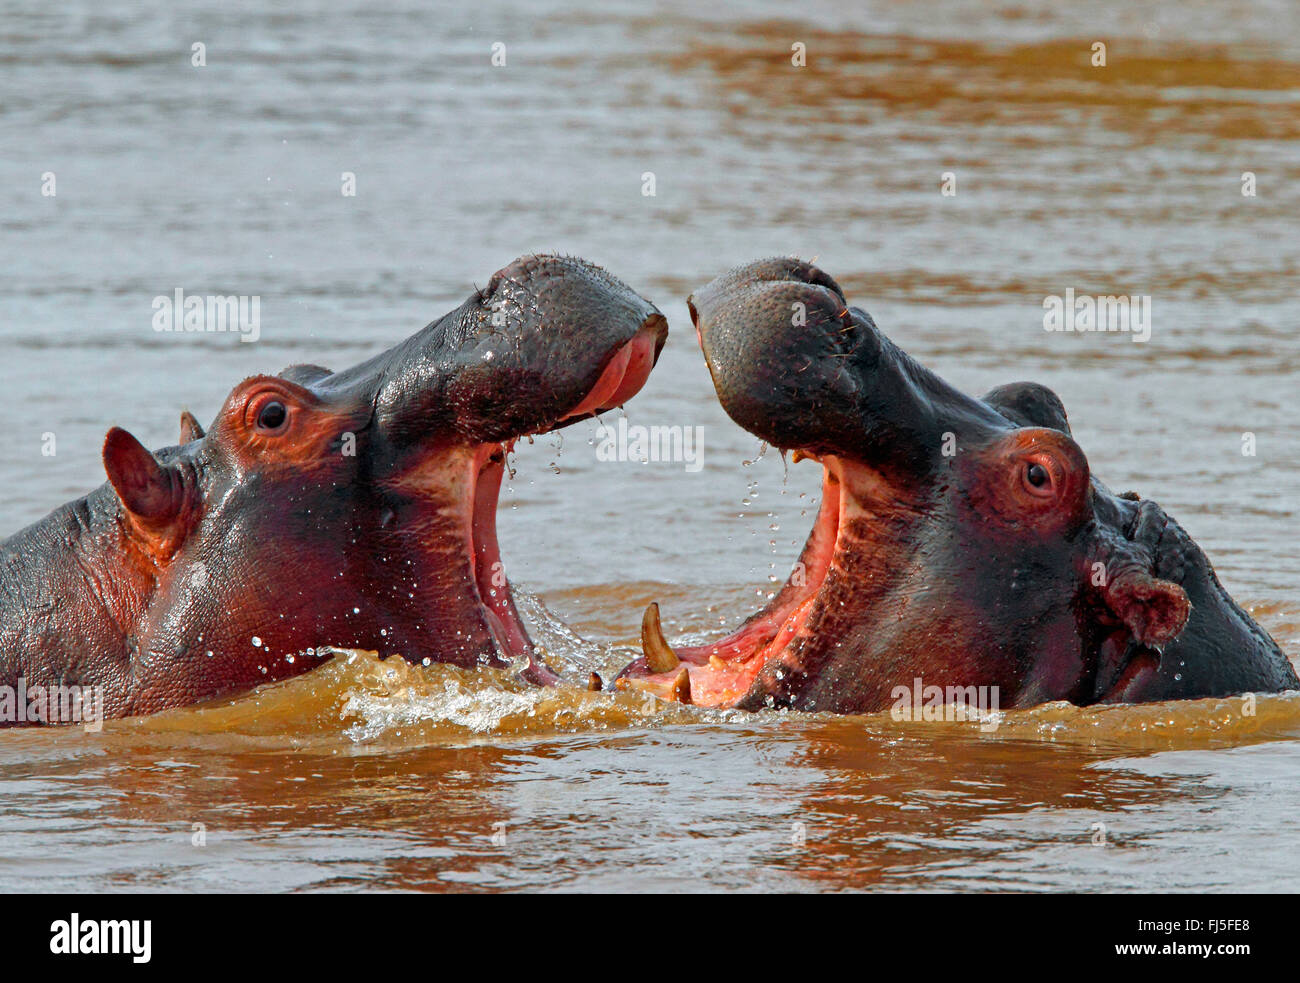 Nilpferd, Nilpferd, gemeinsame Flusspferd (Hippopotamus Amphibius), Bekämpfung der Flusspferde im Wasser, Kenia, Masai Mara Nationalpark Stockfoto